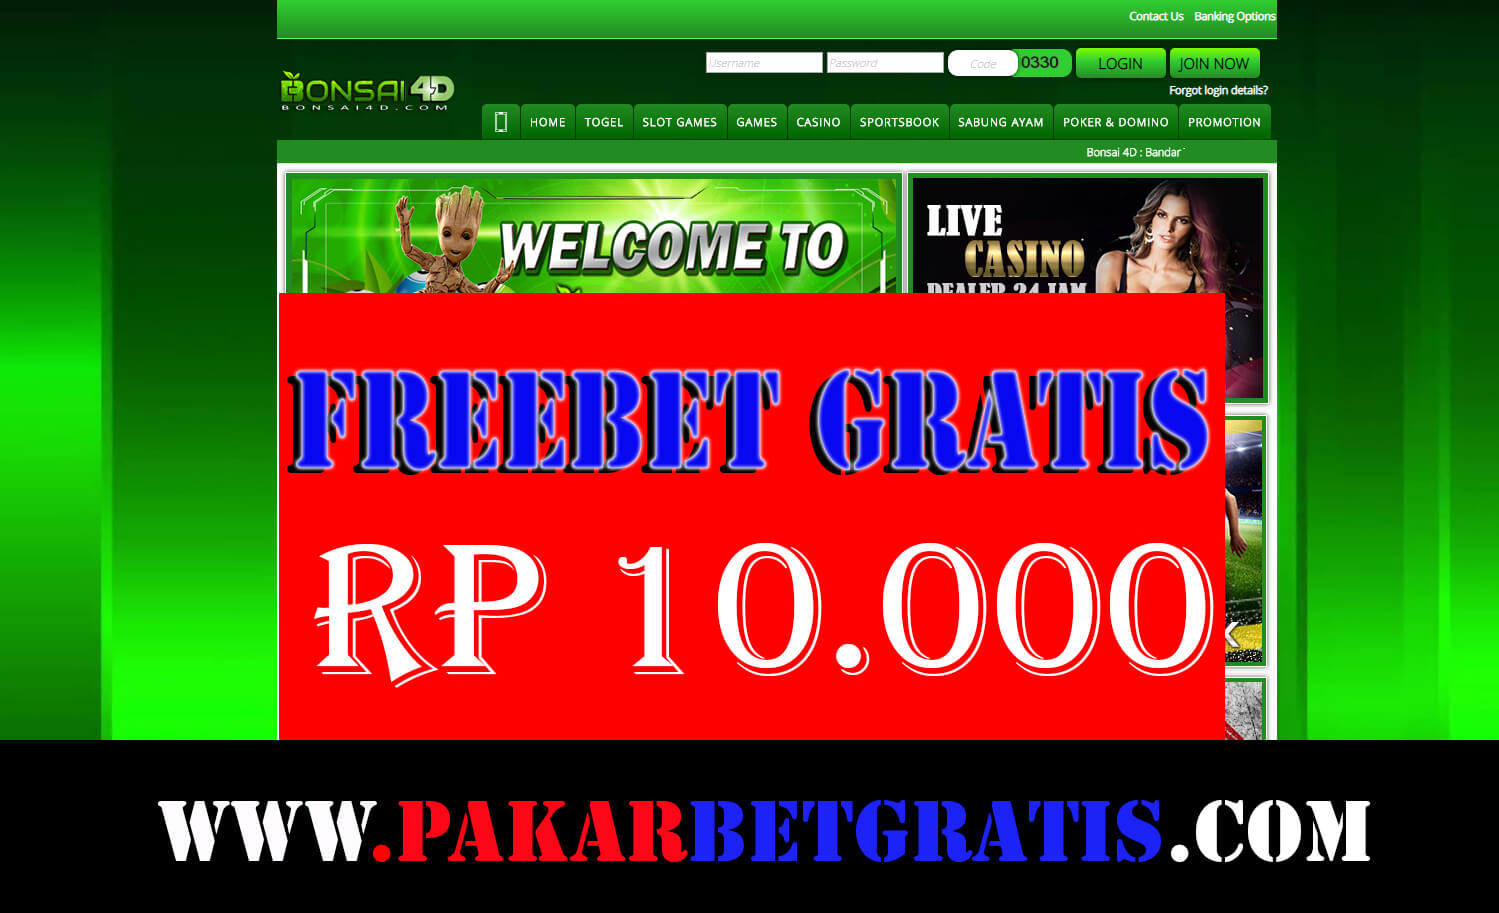 Freebet Gratis Bonsai4D rp 10.000 Tanpa Deposit